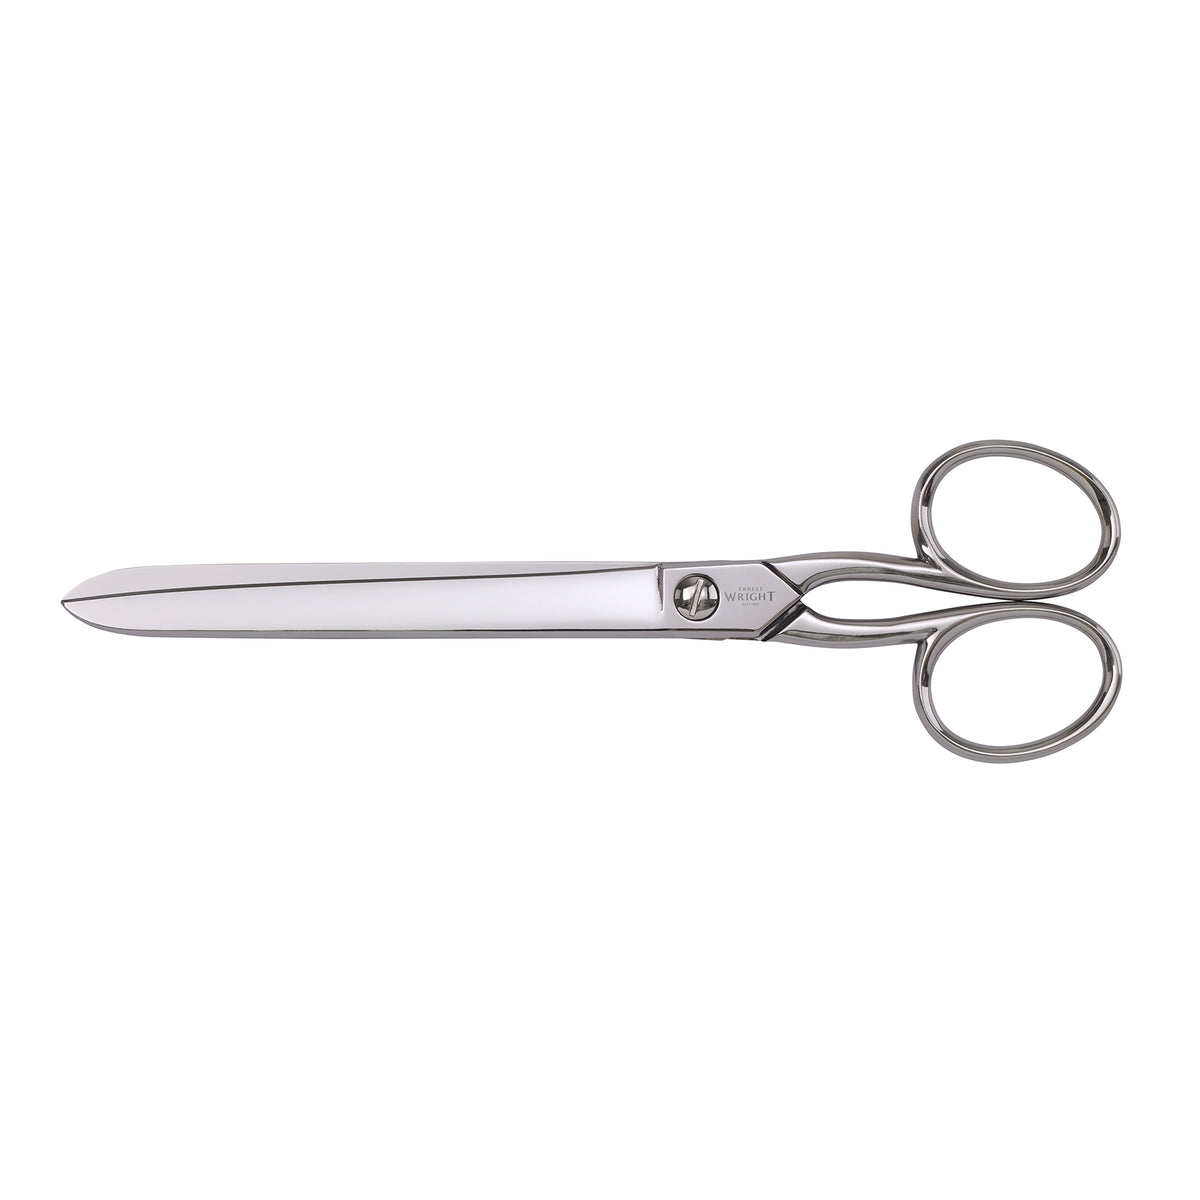 Ernest wright paper hanger scissors